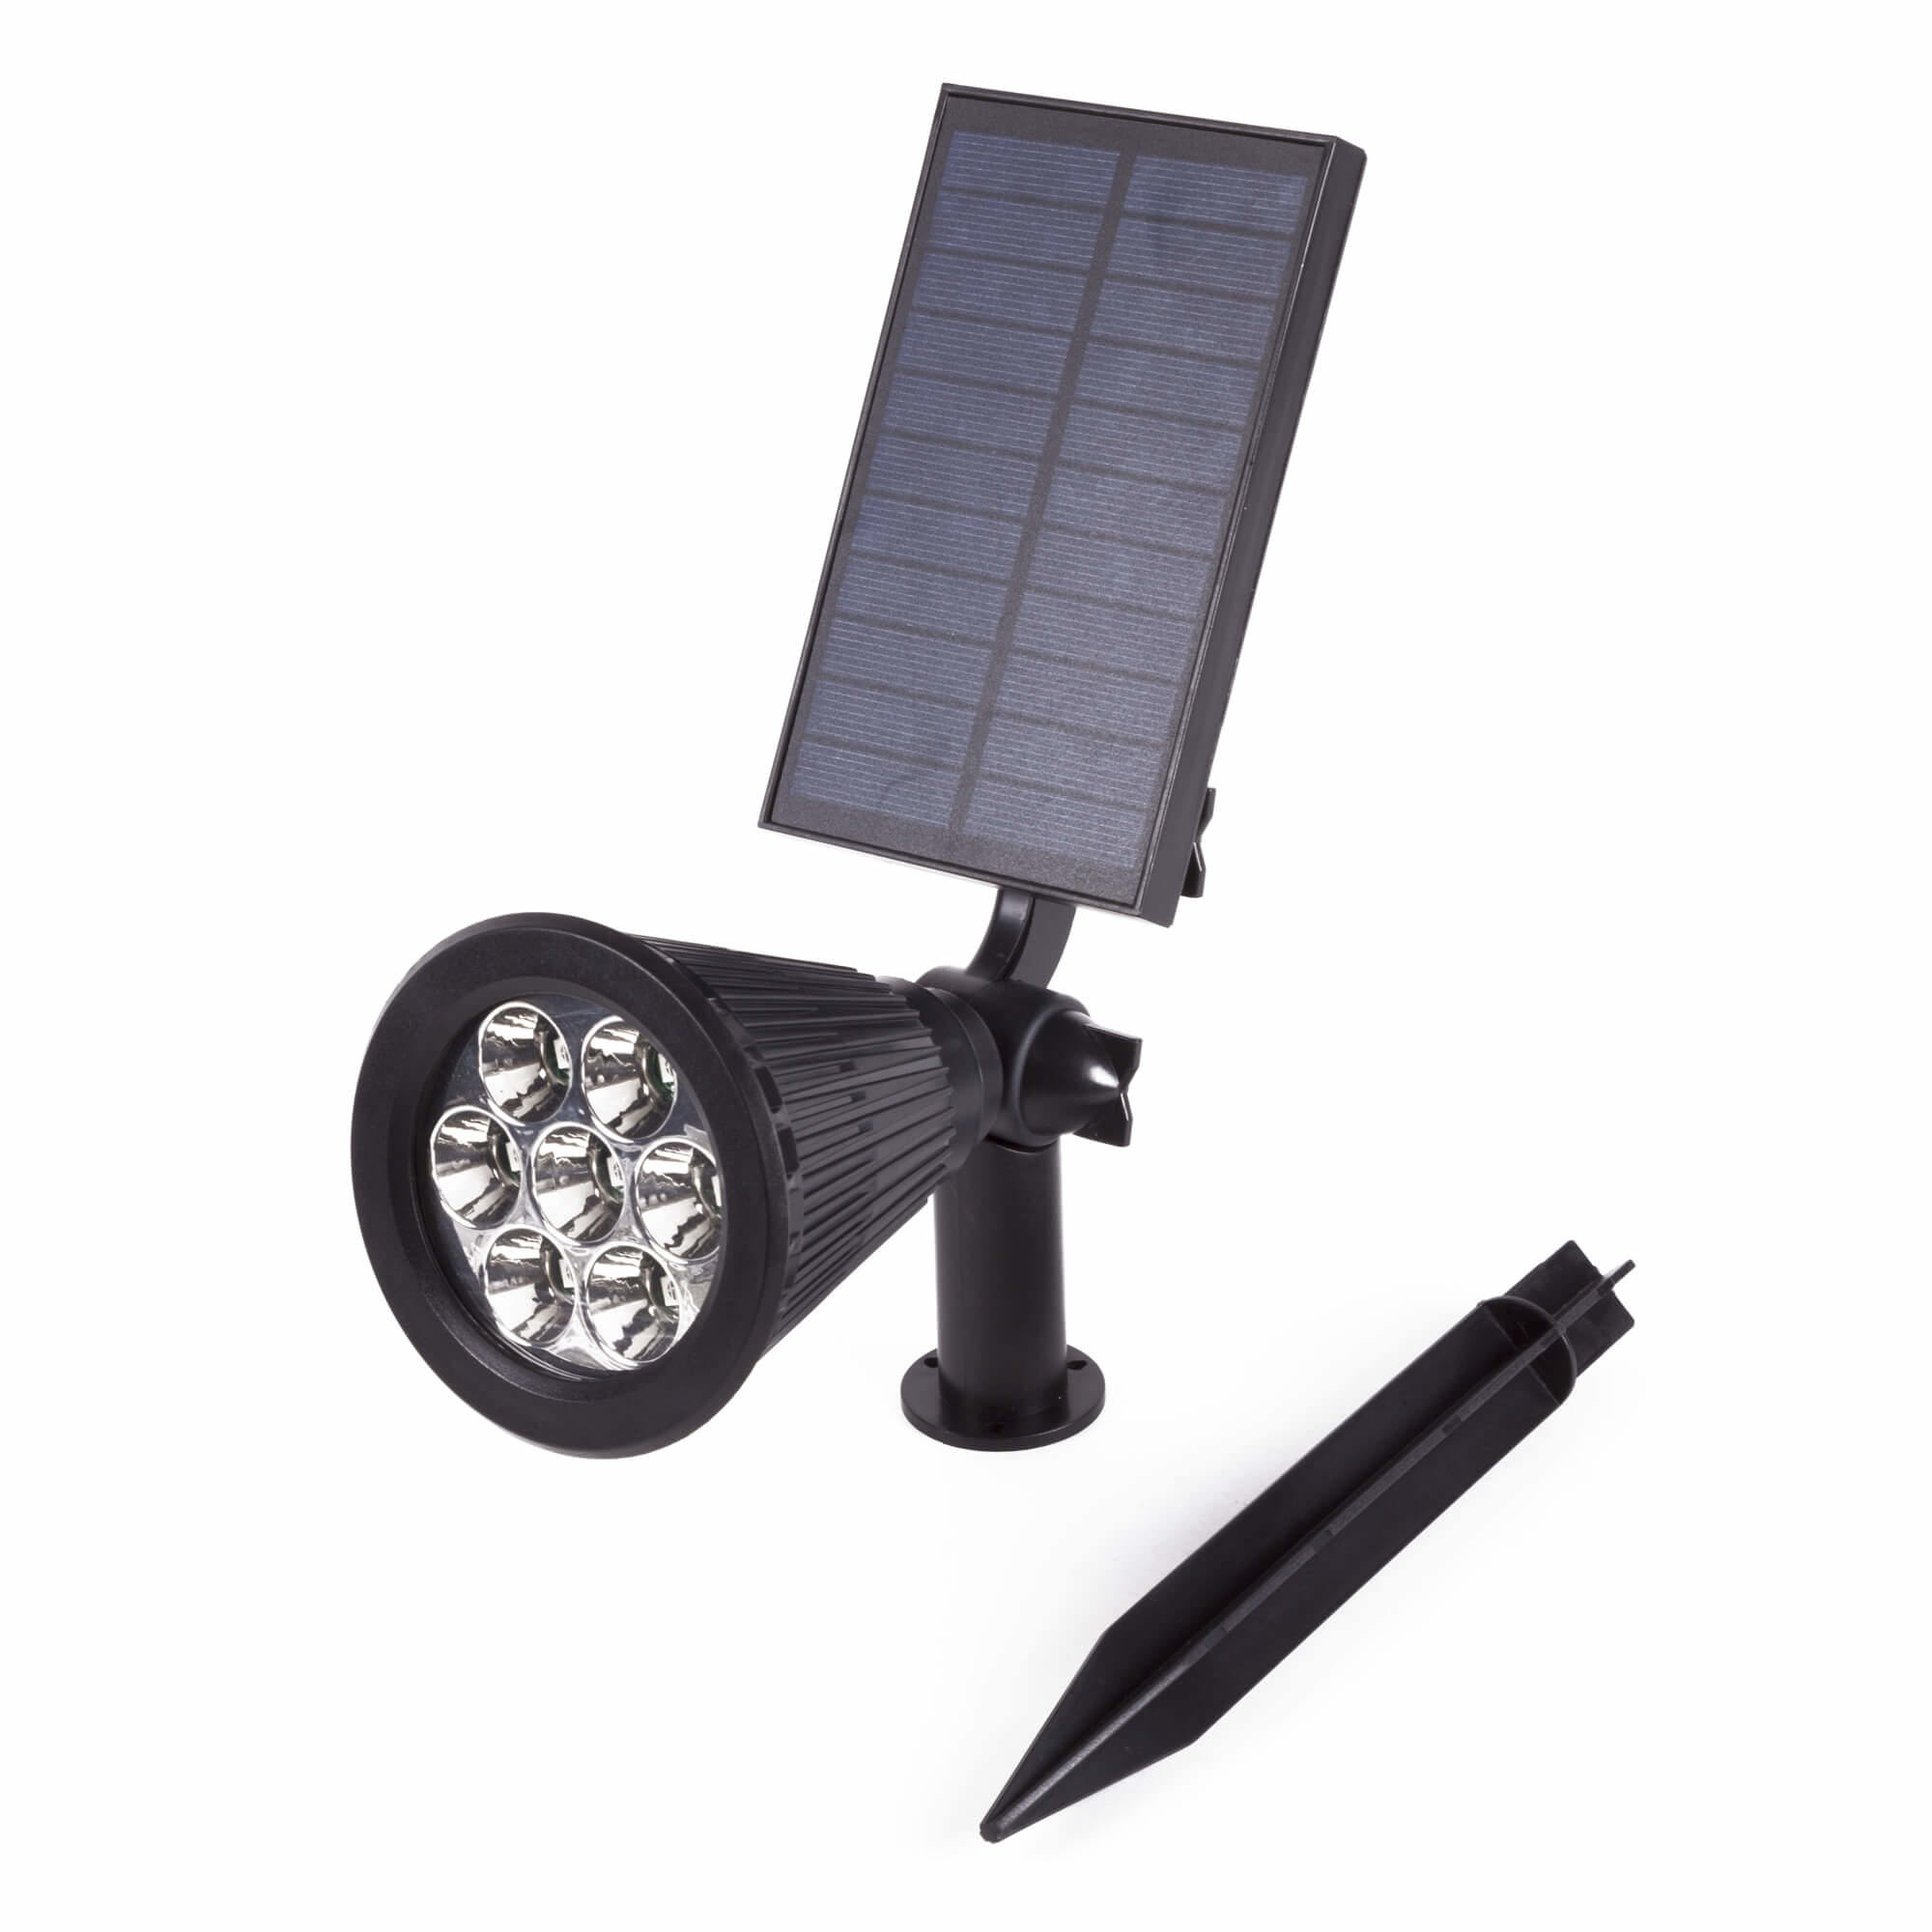 Hofftech LED Prikspot/Wandspot Solar - CDR Sensor - IP65 - 1800 mAh - 3.7  Volt kopen? - 2Cheap